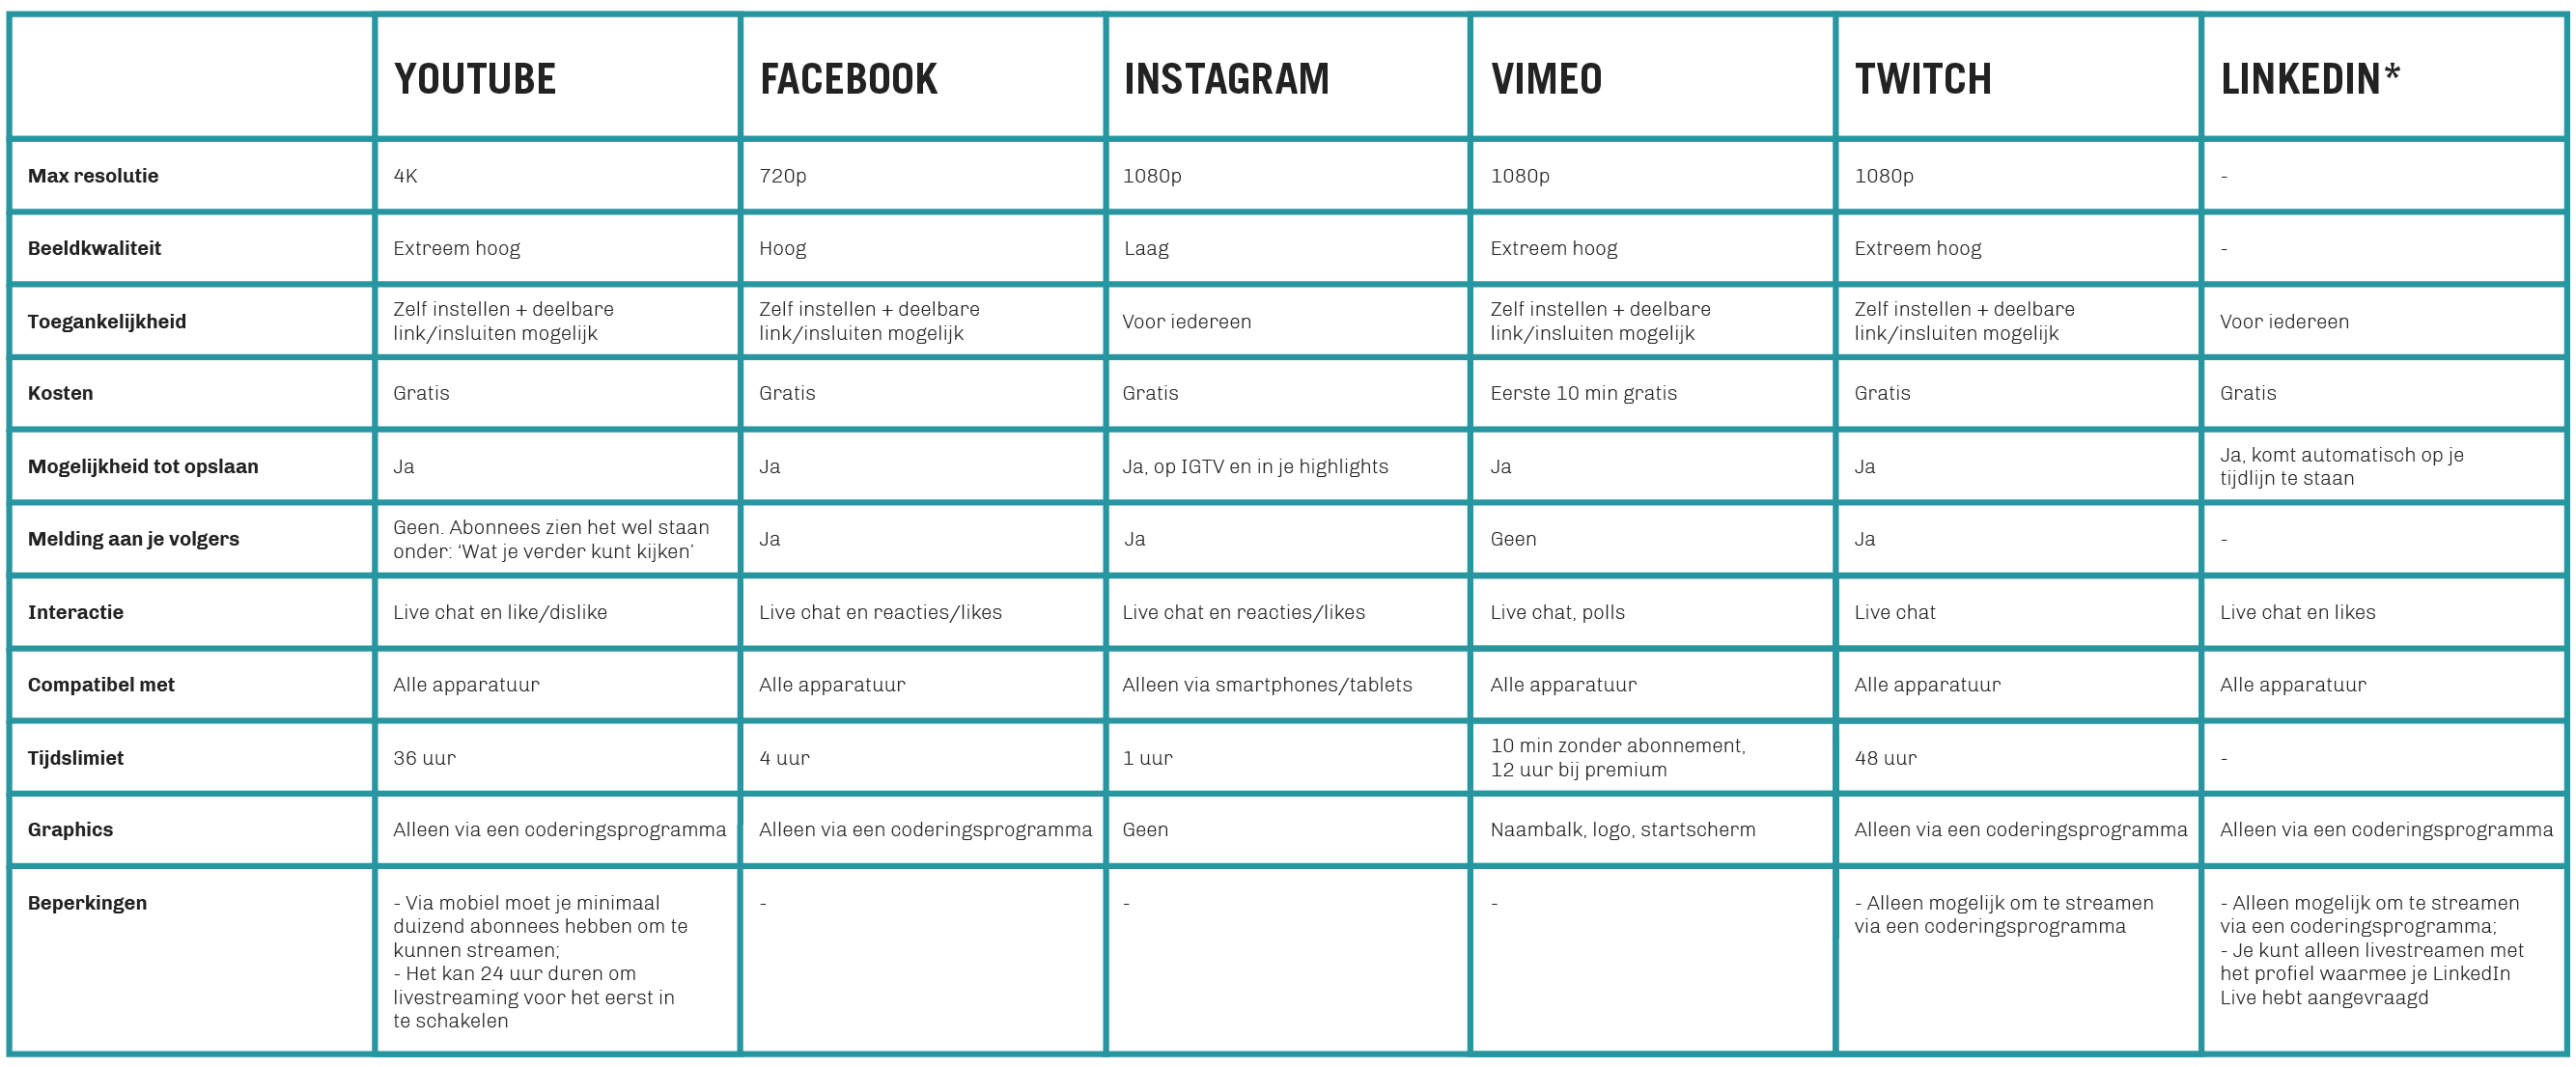 Tabel met een overzicht van alle functies, voordelen en nadelen van verschillende livestream-platformen van social media, zoals: Instagram Live, LinkedIn, Facebook, YouTube, Vimeo en Twitch.